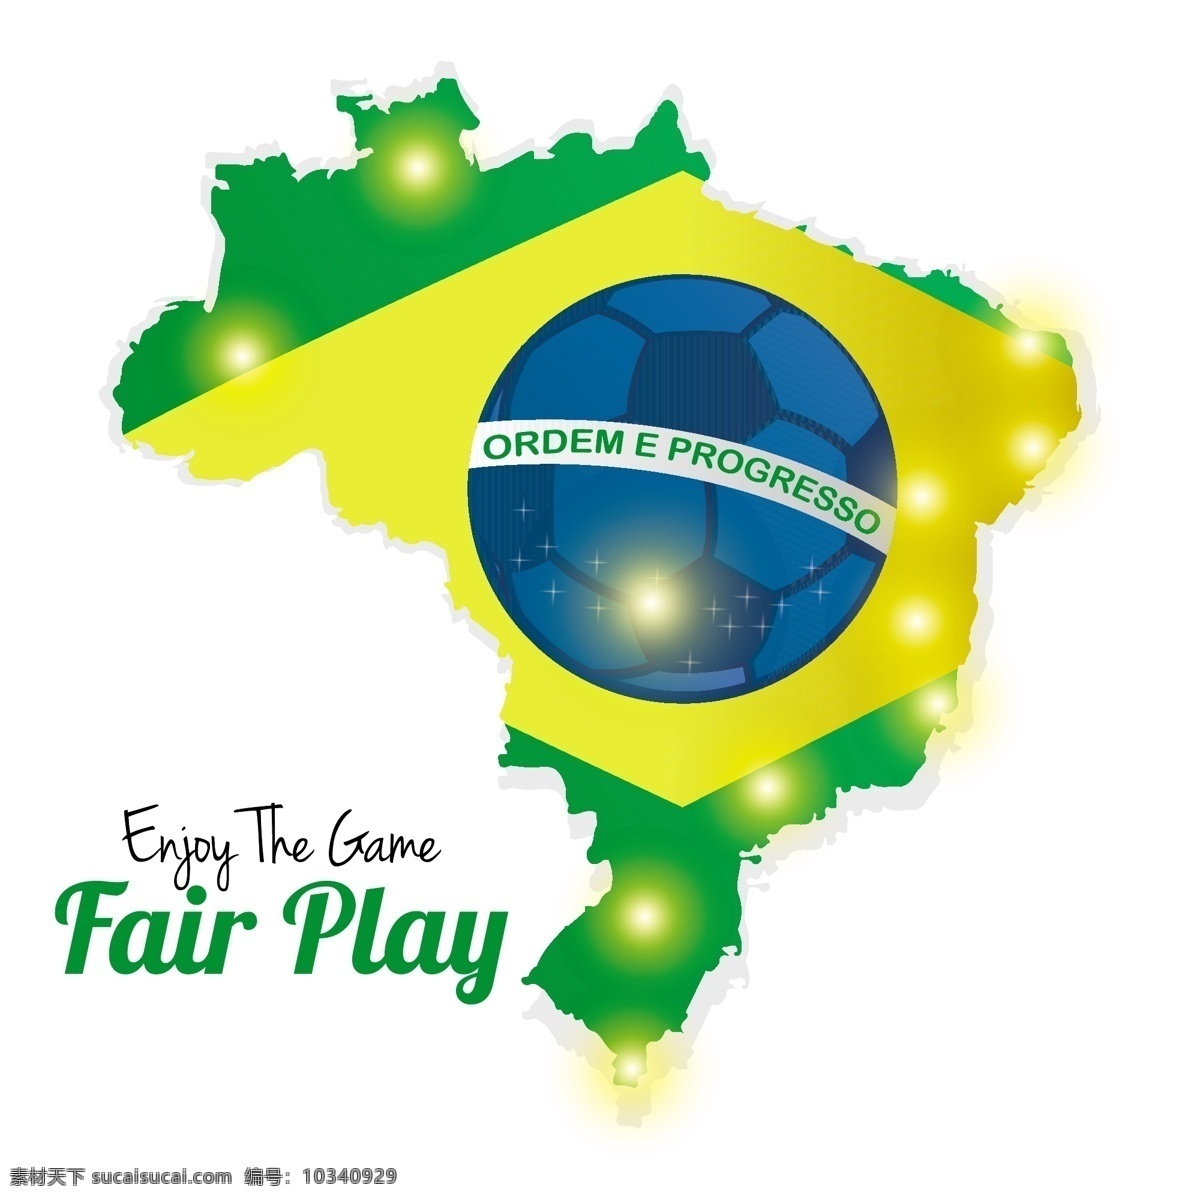 巴西 地图 国旗 模板下载 巴西地图 巴西国旗 足球 世界杯 足球赛事 体育运动 生活百科 矢量素材 白色